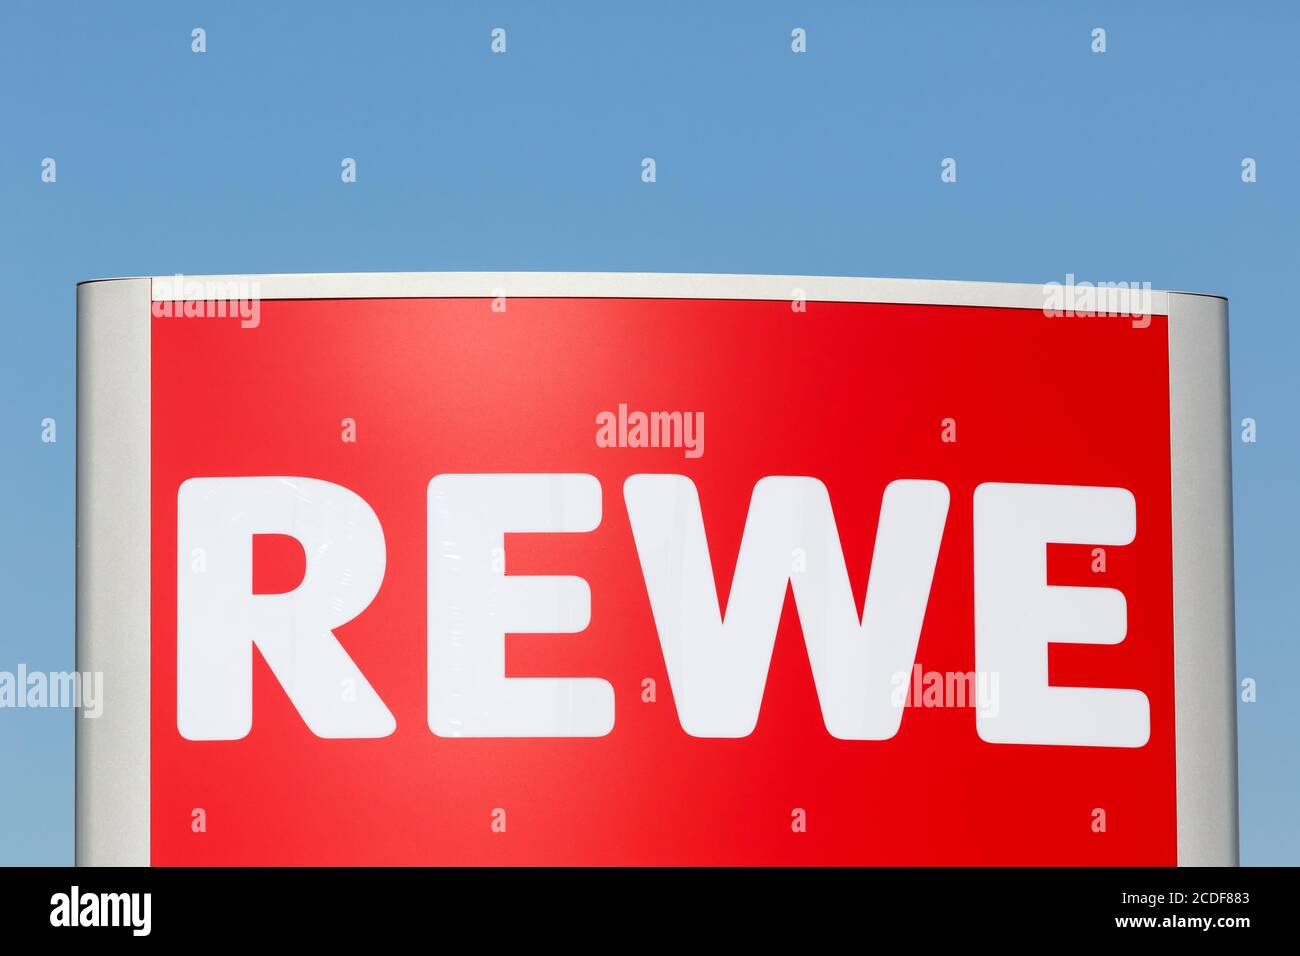 Stuttgart, Germany - May 17, 2020: REWE logo sign supermarket food shop ...